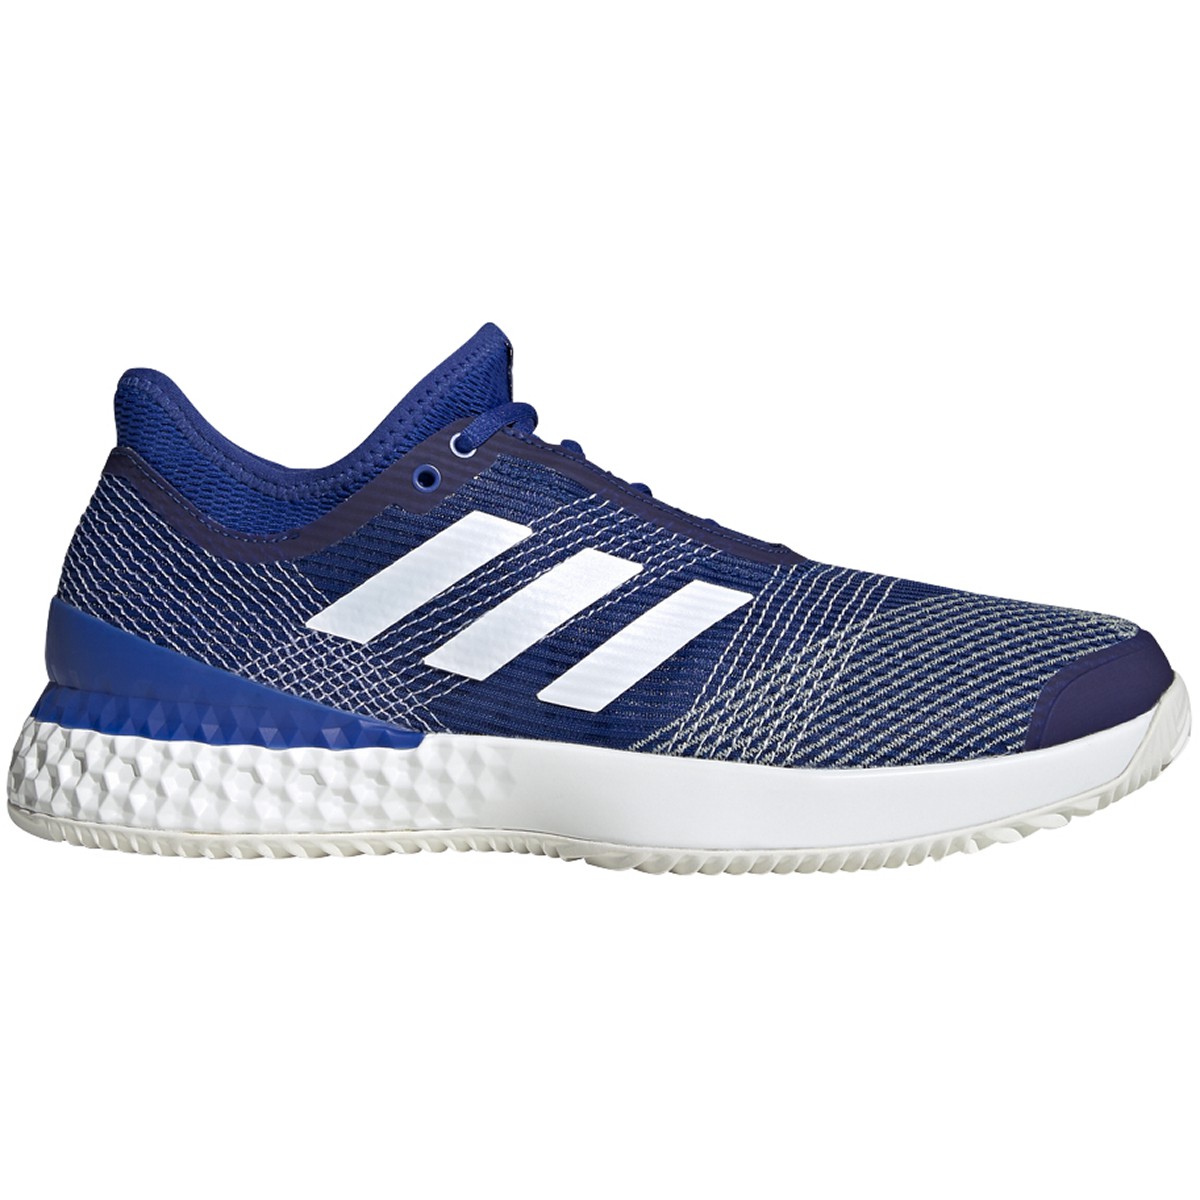 Adidas Men's Adizero Ubersonic 3.0 Clay Tennis Shoes (Team Royal Blue ...